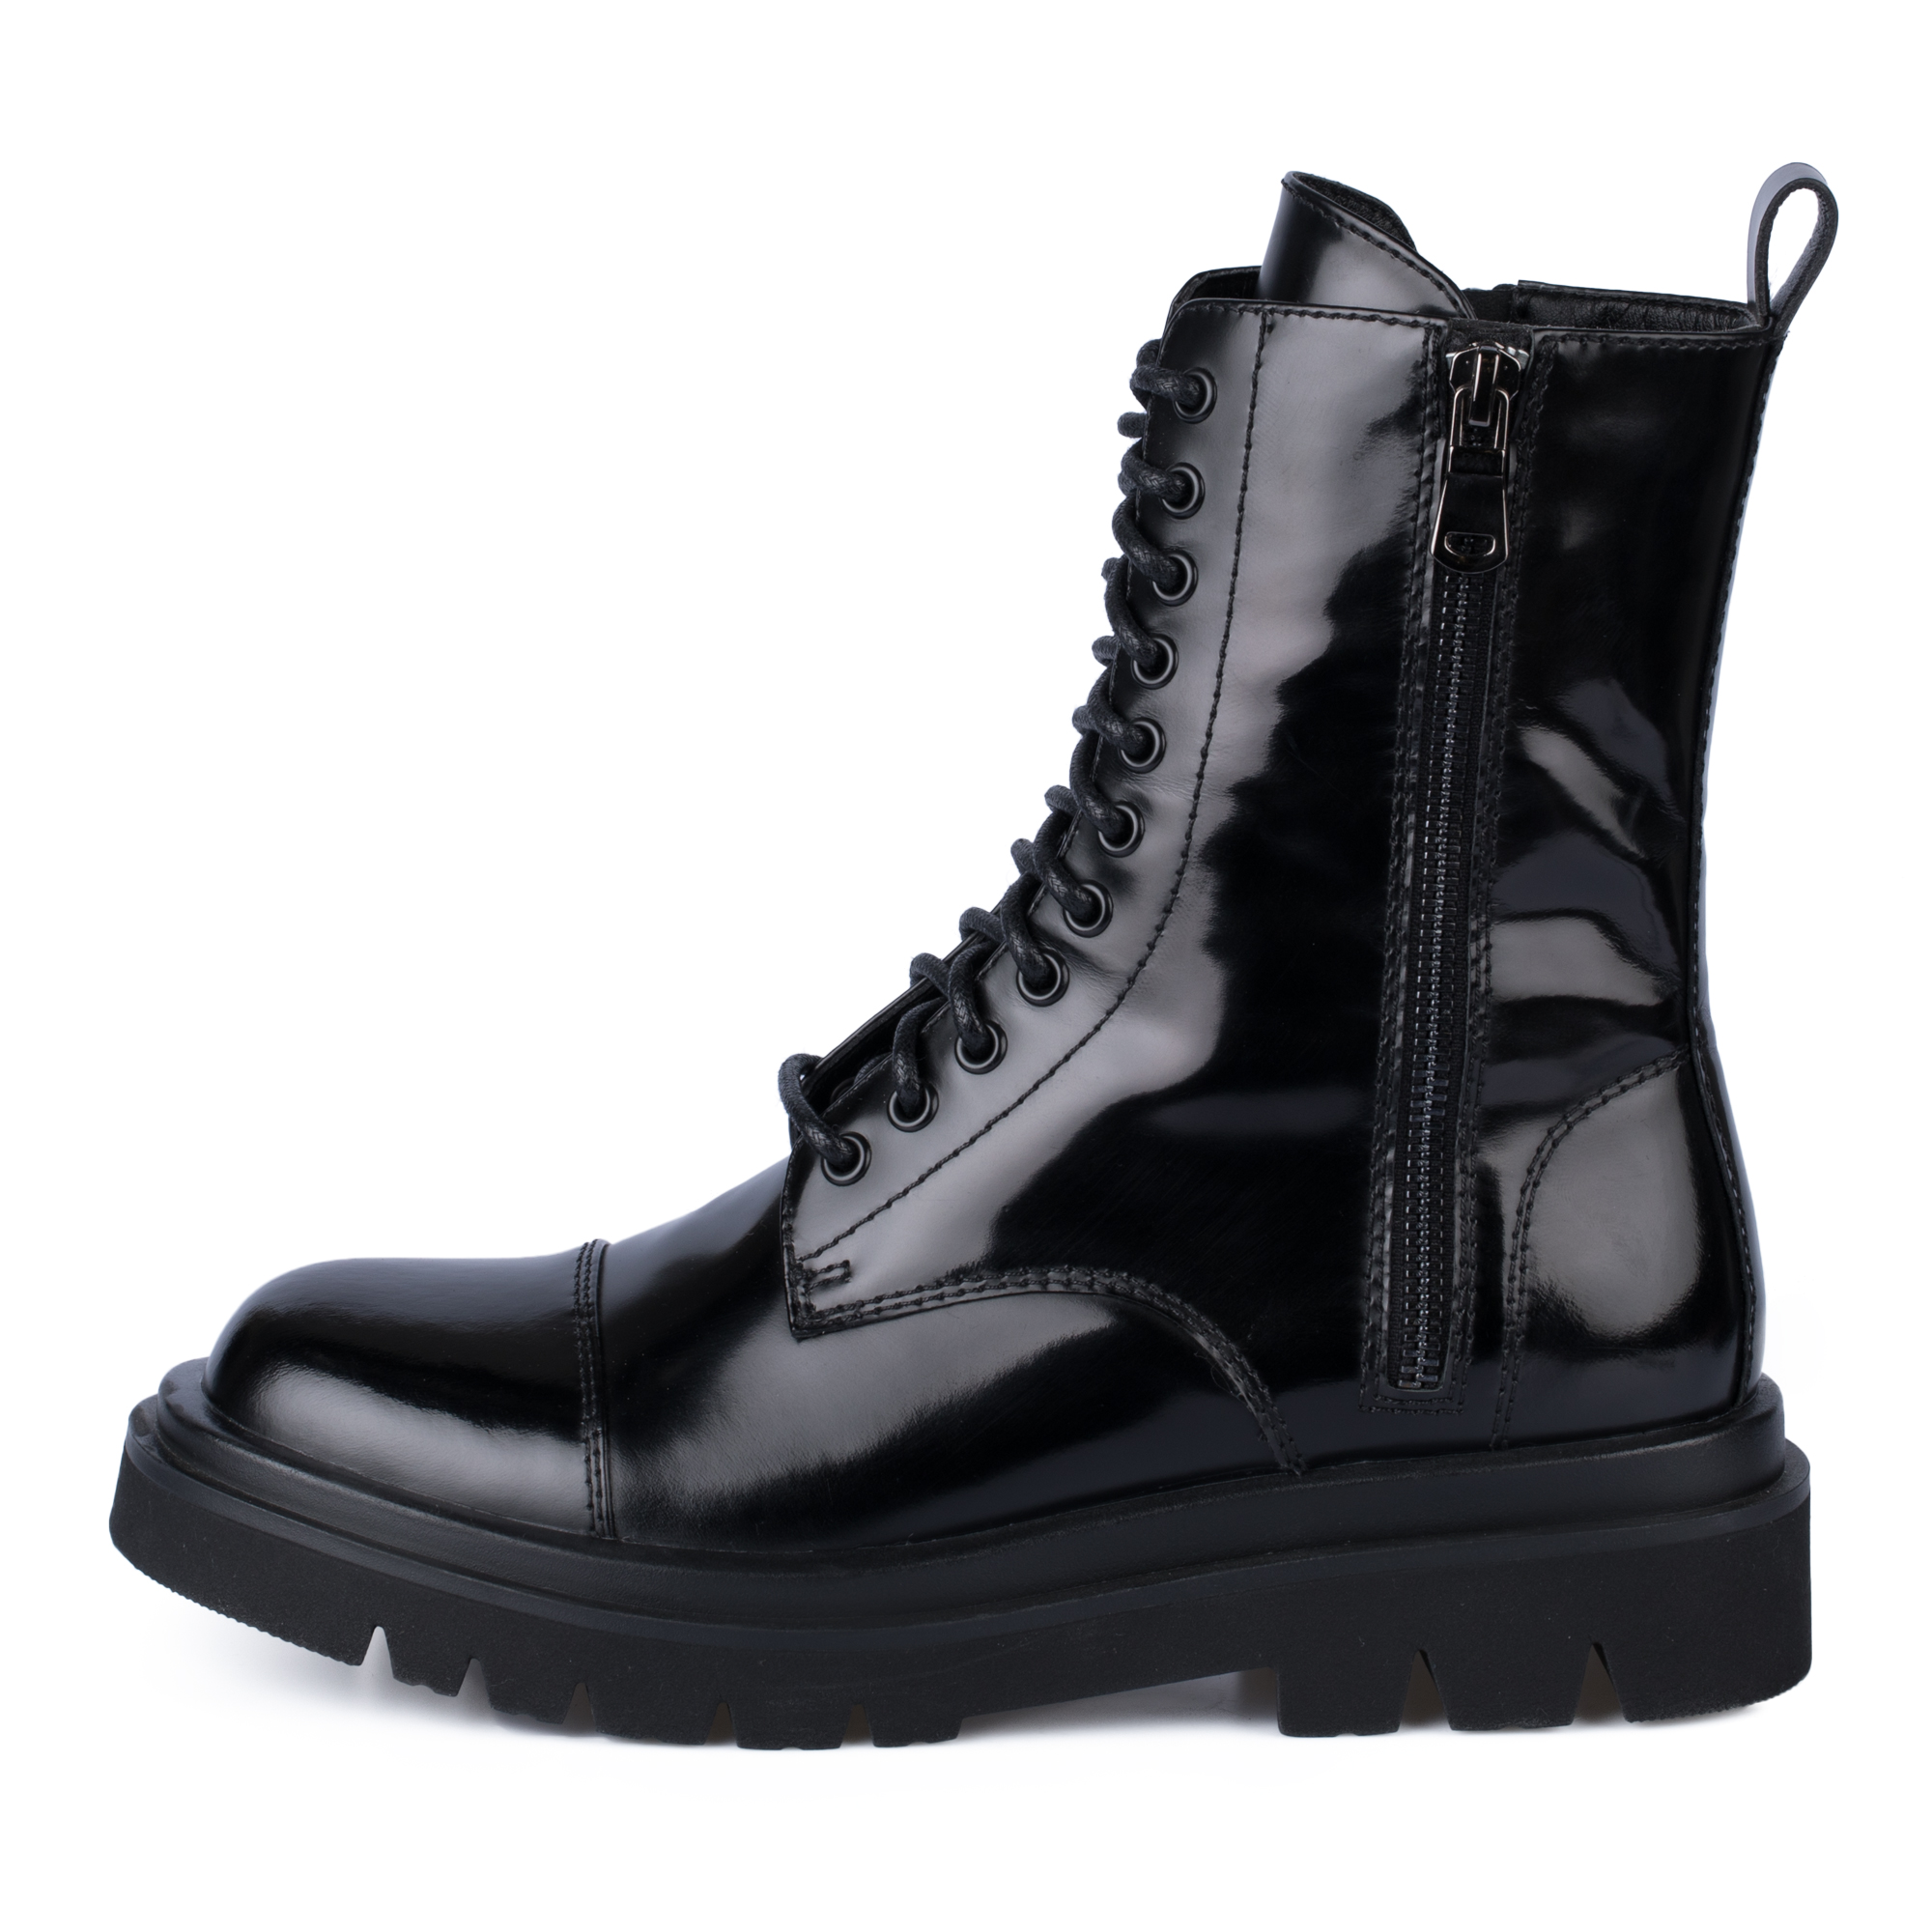 Ботинки Thomas Munz 233-895A-2602, цвет черный, размер 40 - фото 1